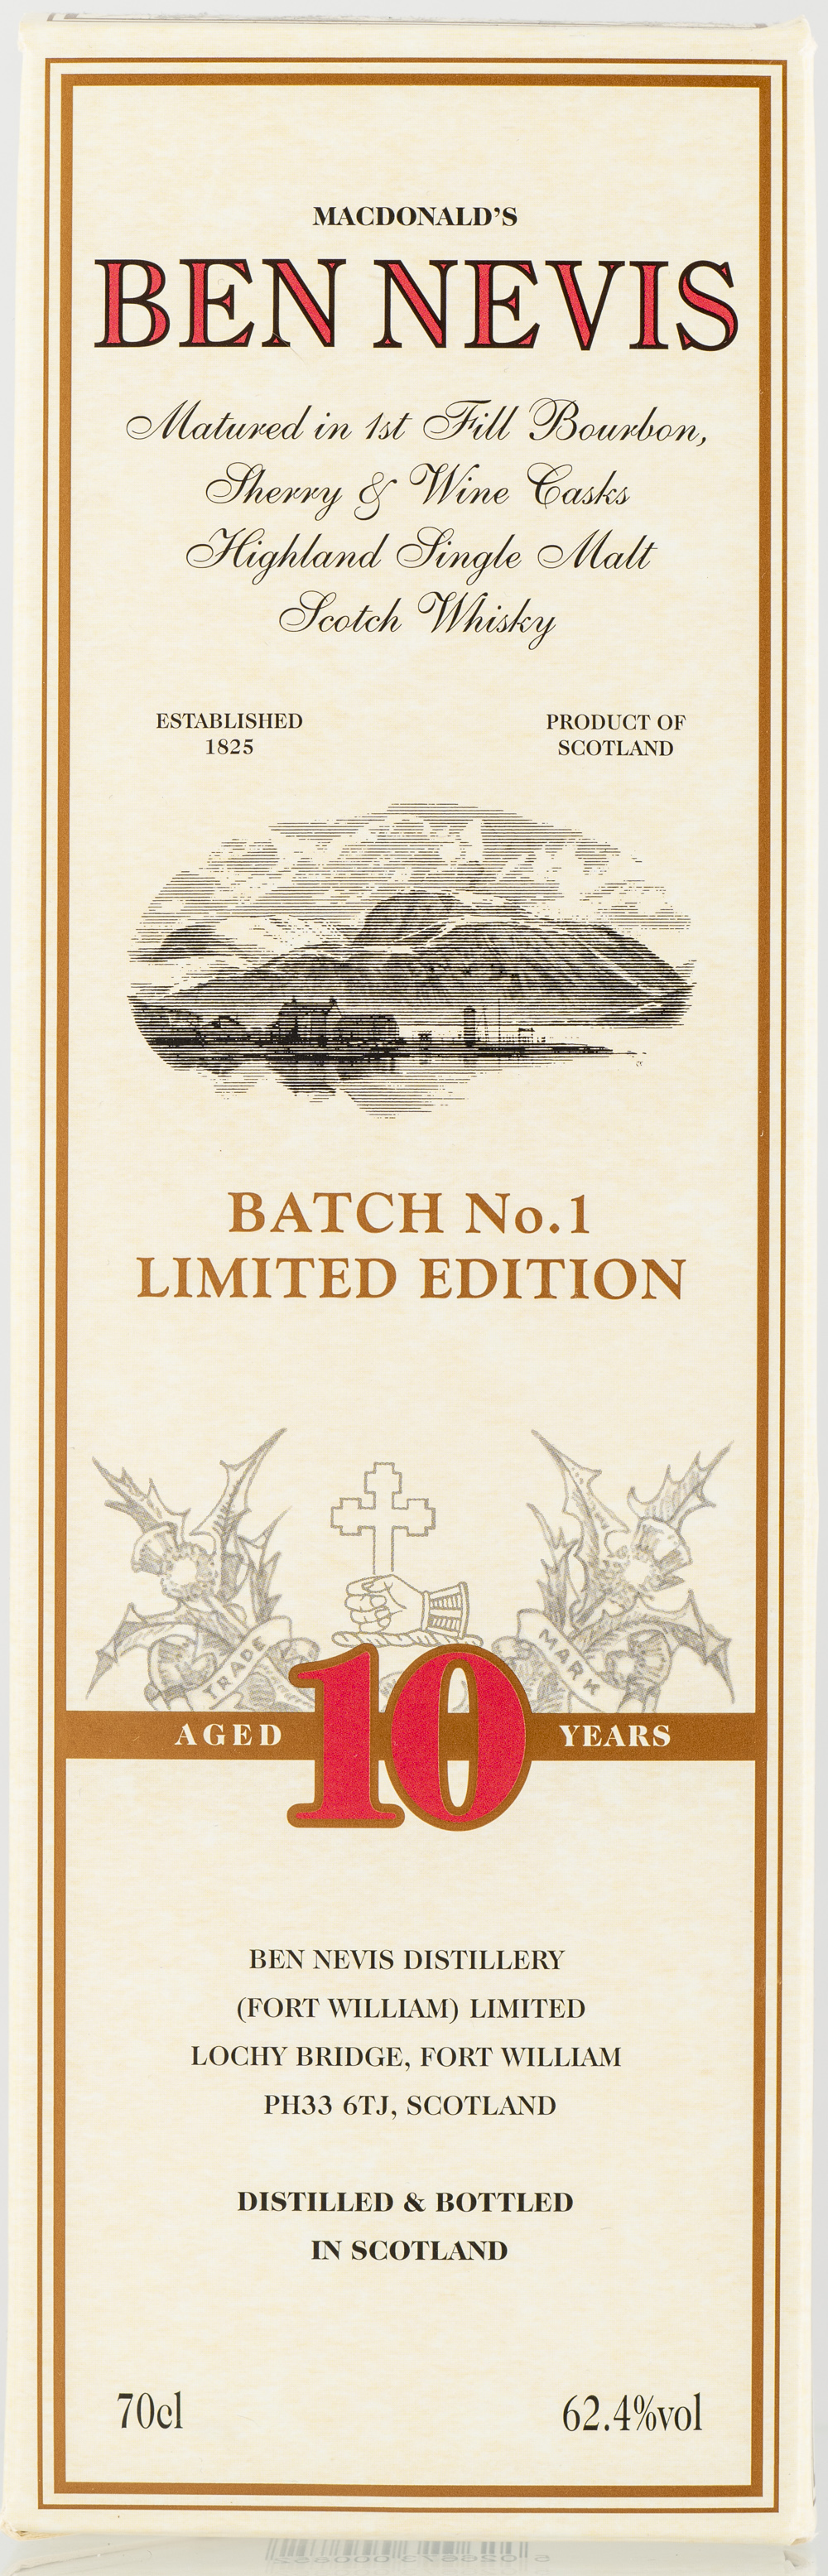 Billede: PHC_2581 - Ben Nevis 10 Batch No. 1 Limited Edition - box front.jpg